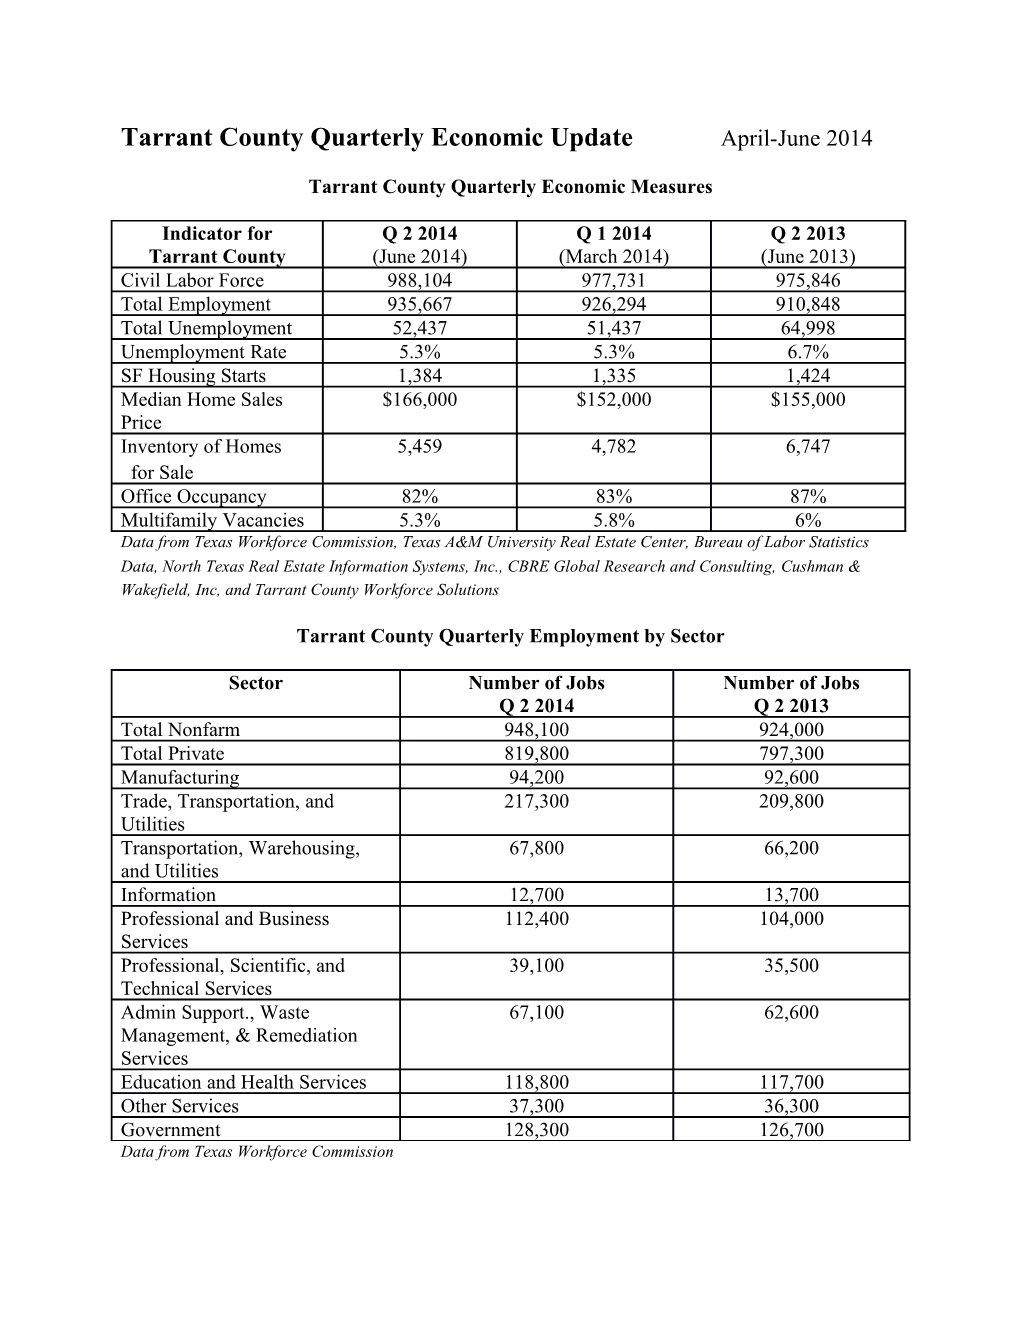 Tarrant County Quarterly Economic Measures